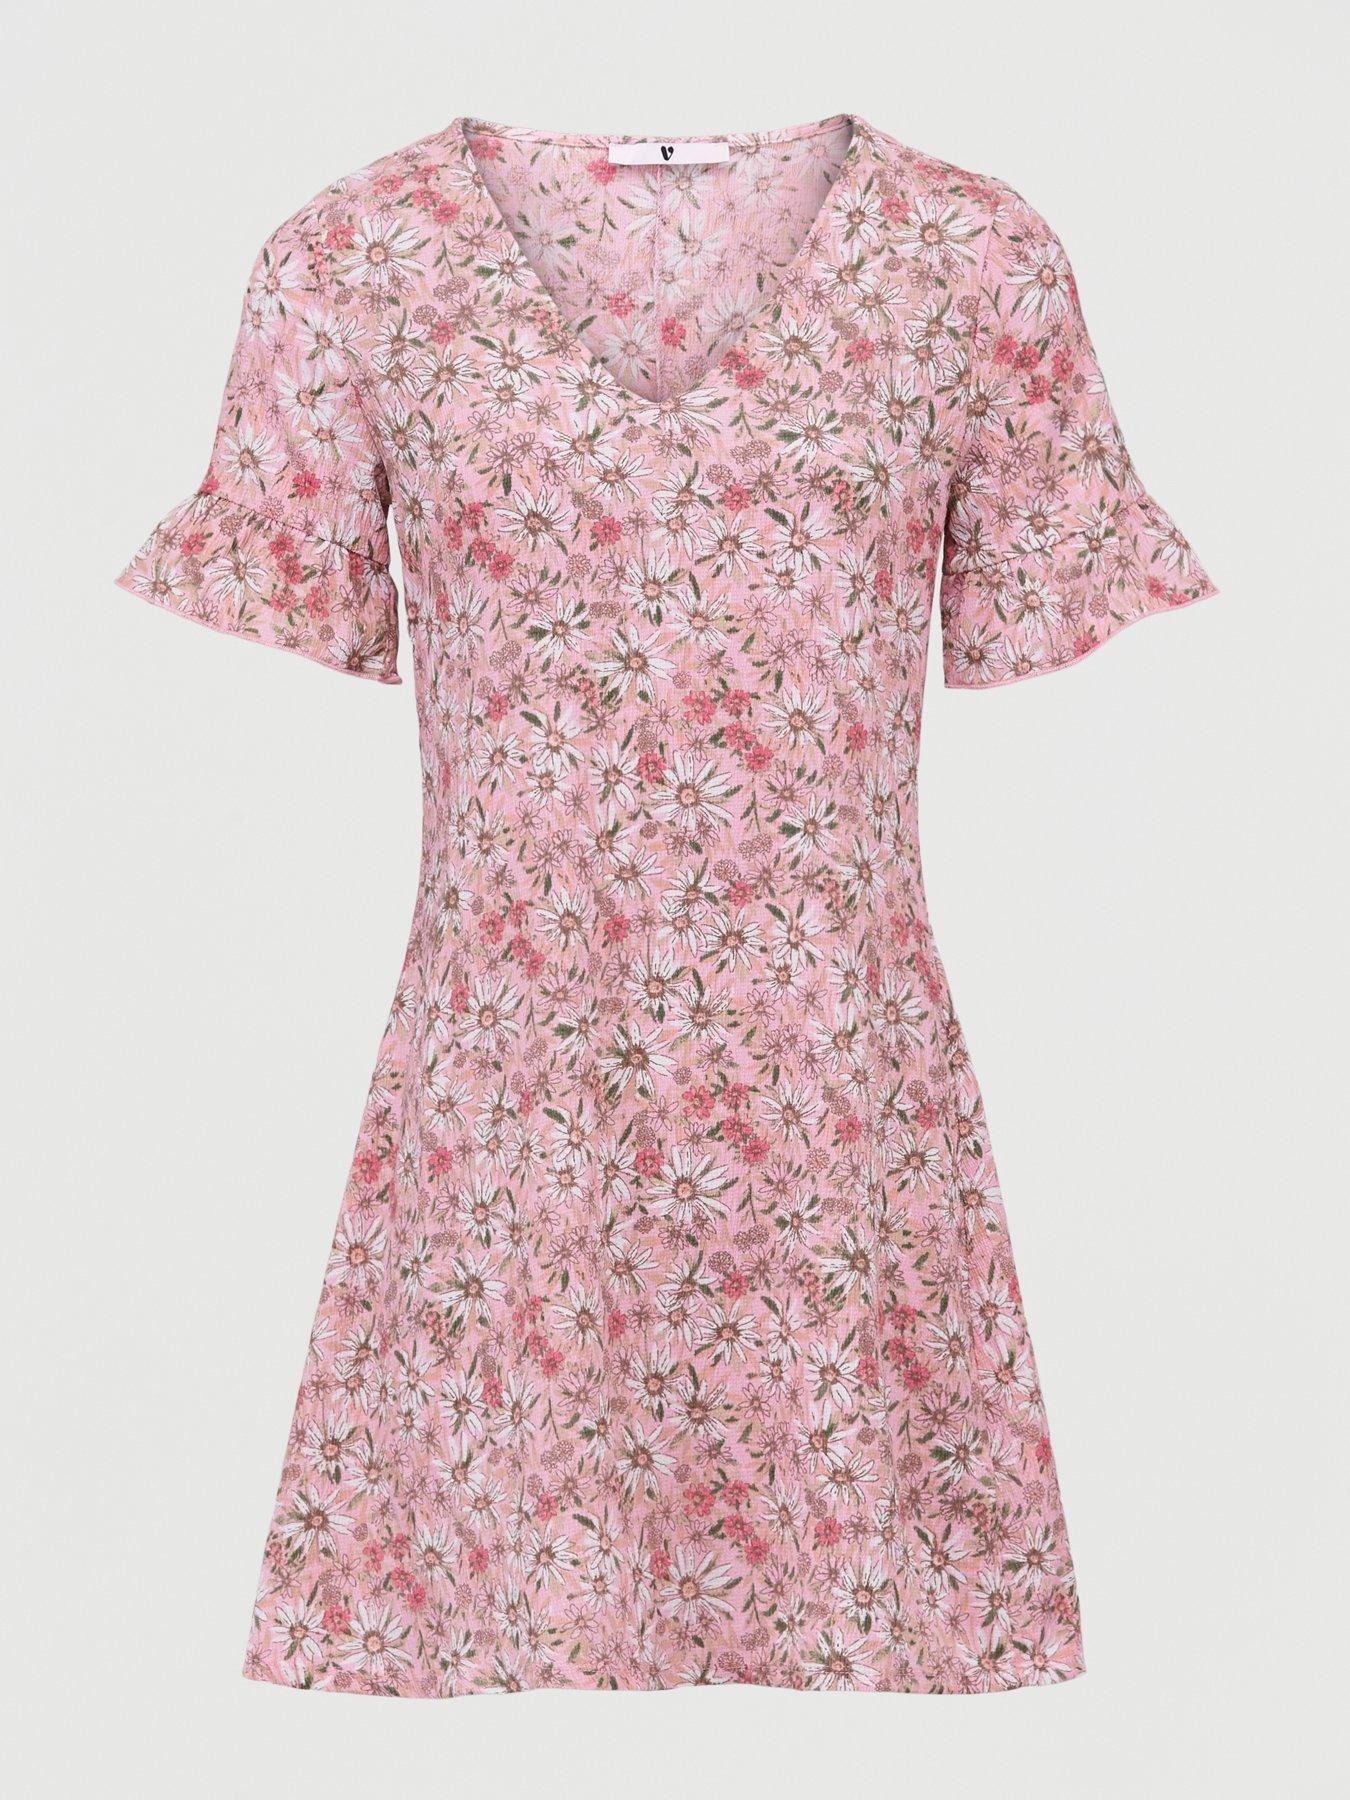 pink tea dress uk